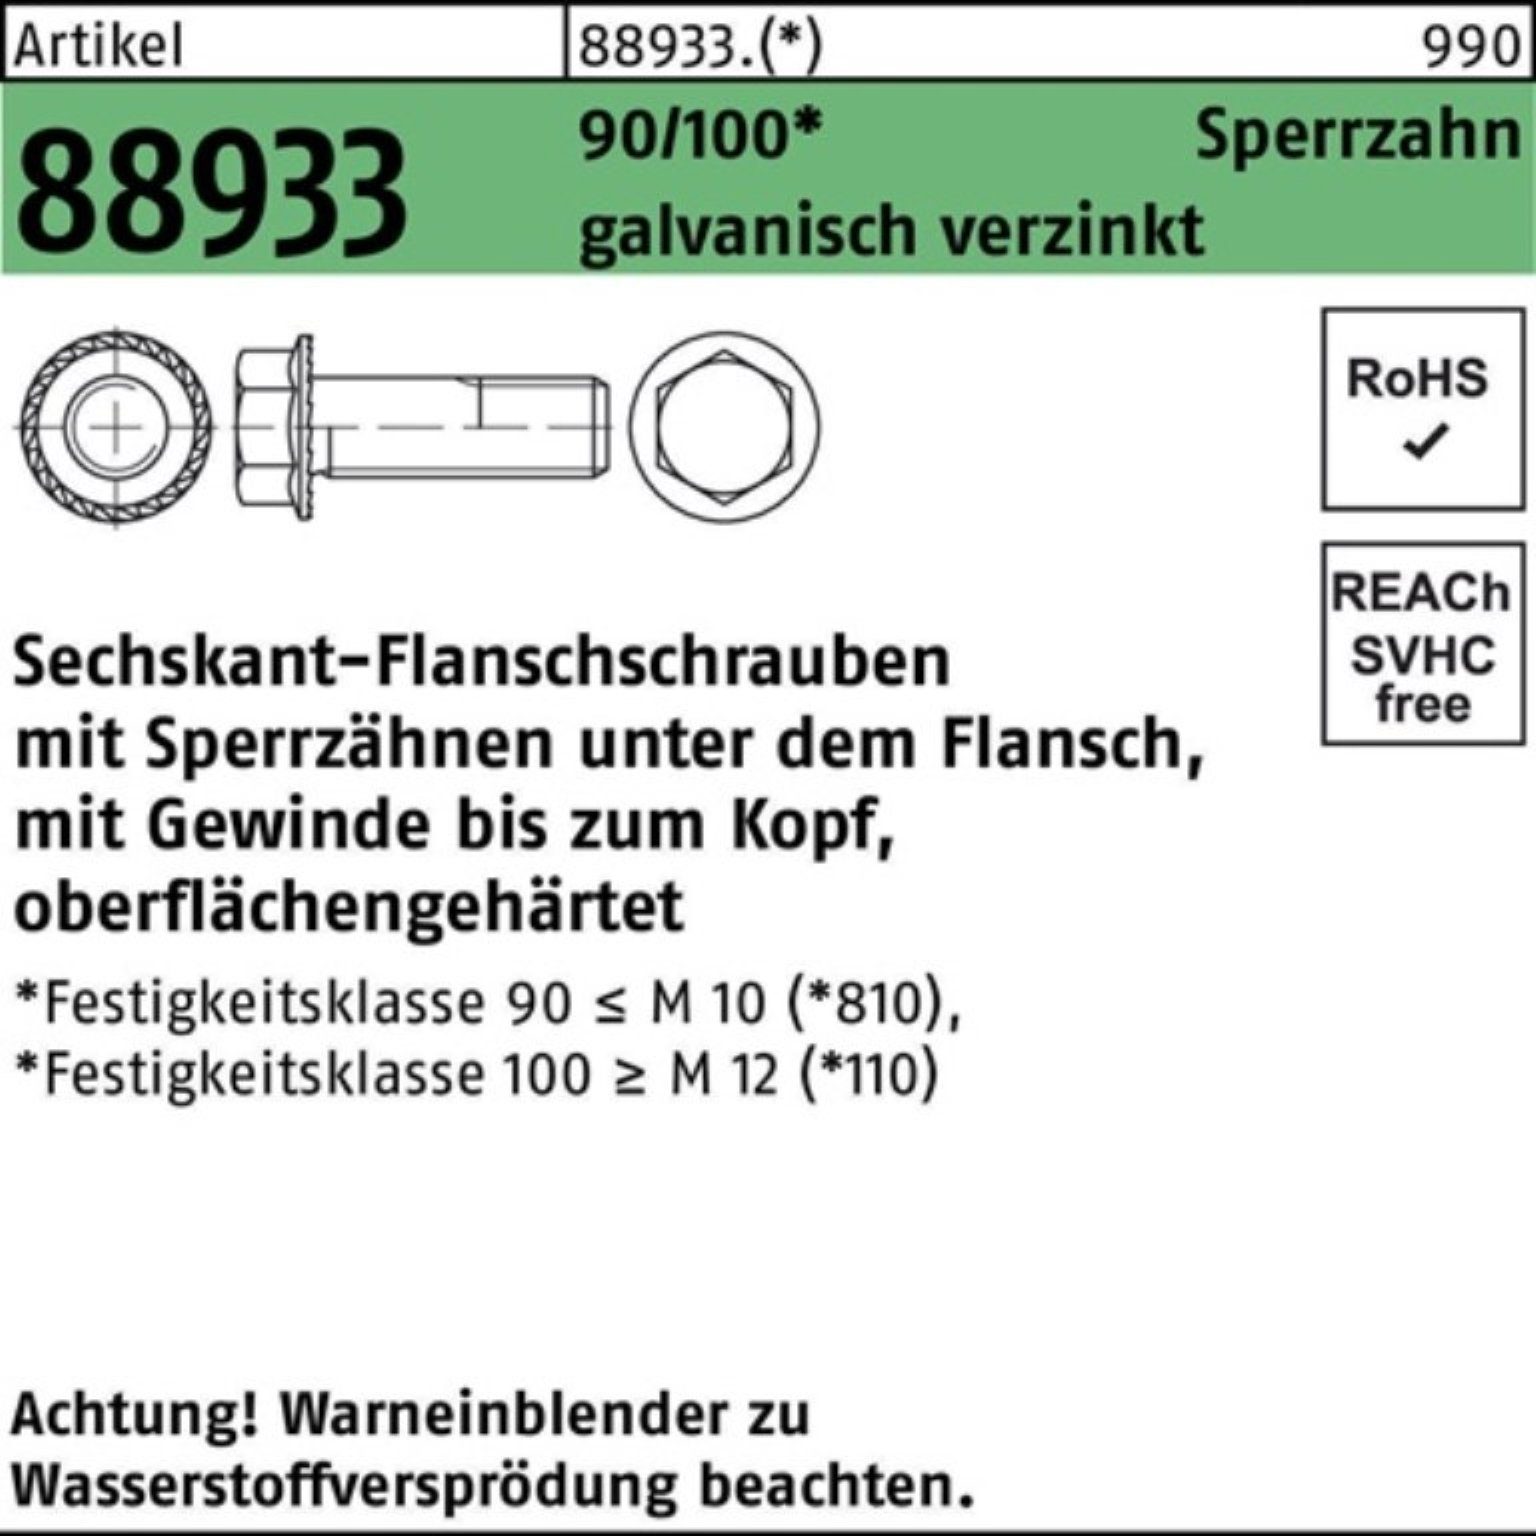 Schraube Sperrz. ga VG Reyher 200er R 90/100 88933 M8x16 Pack Sechskantflanschschraube